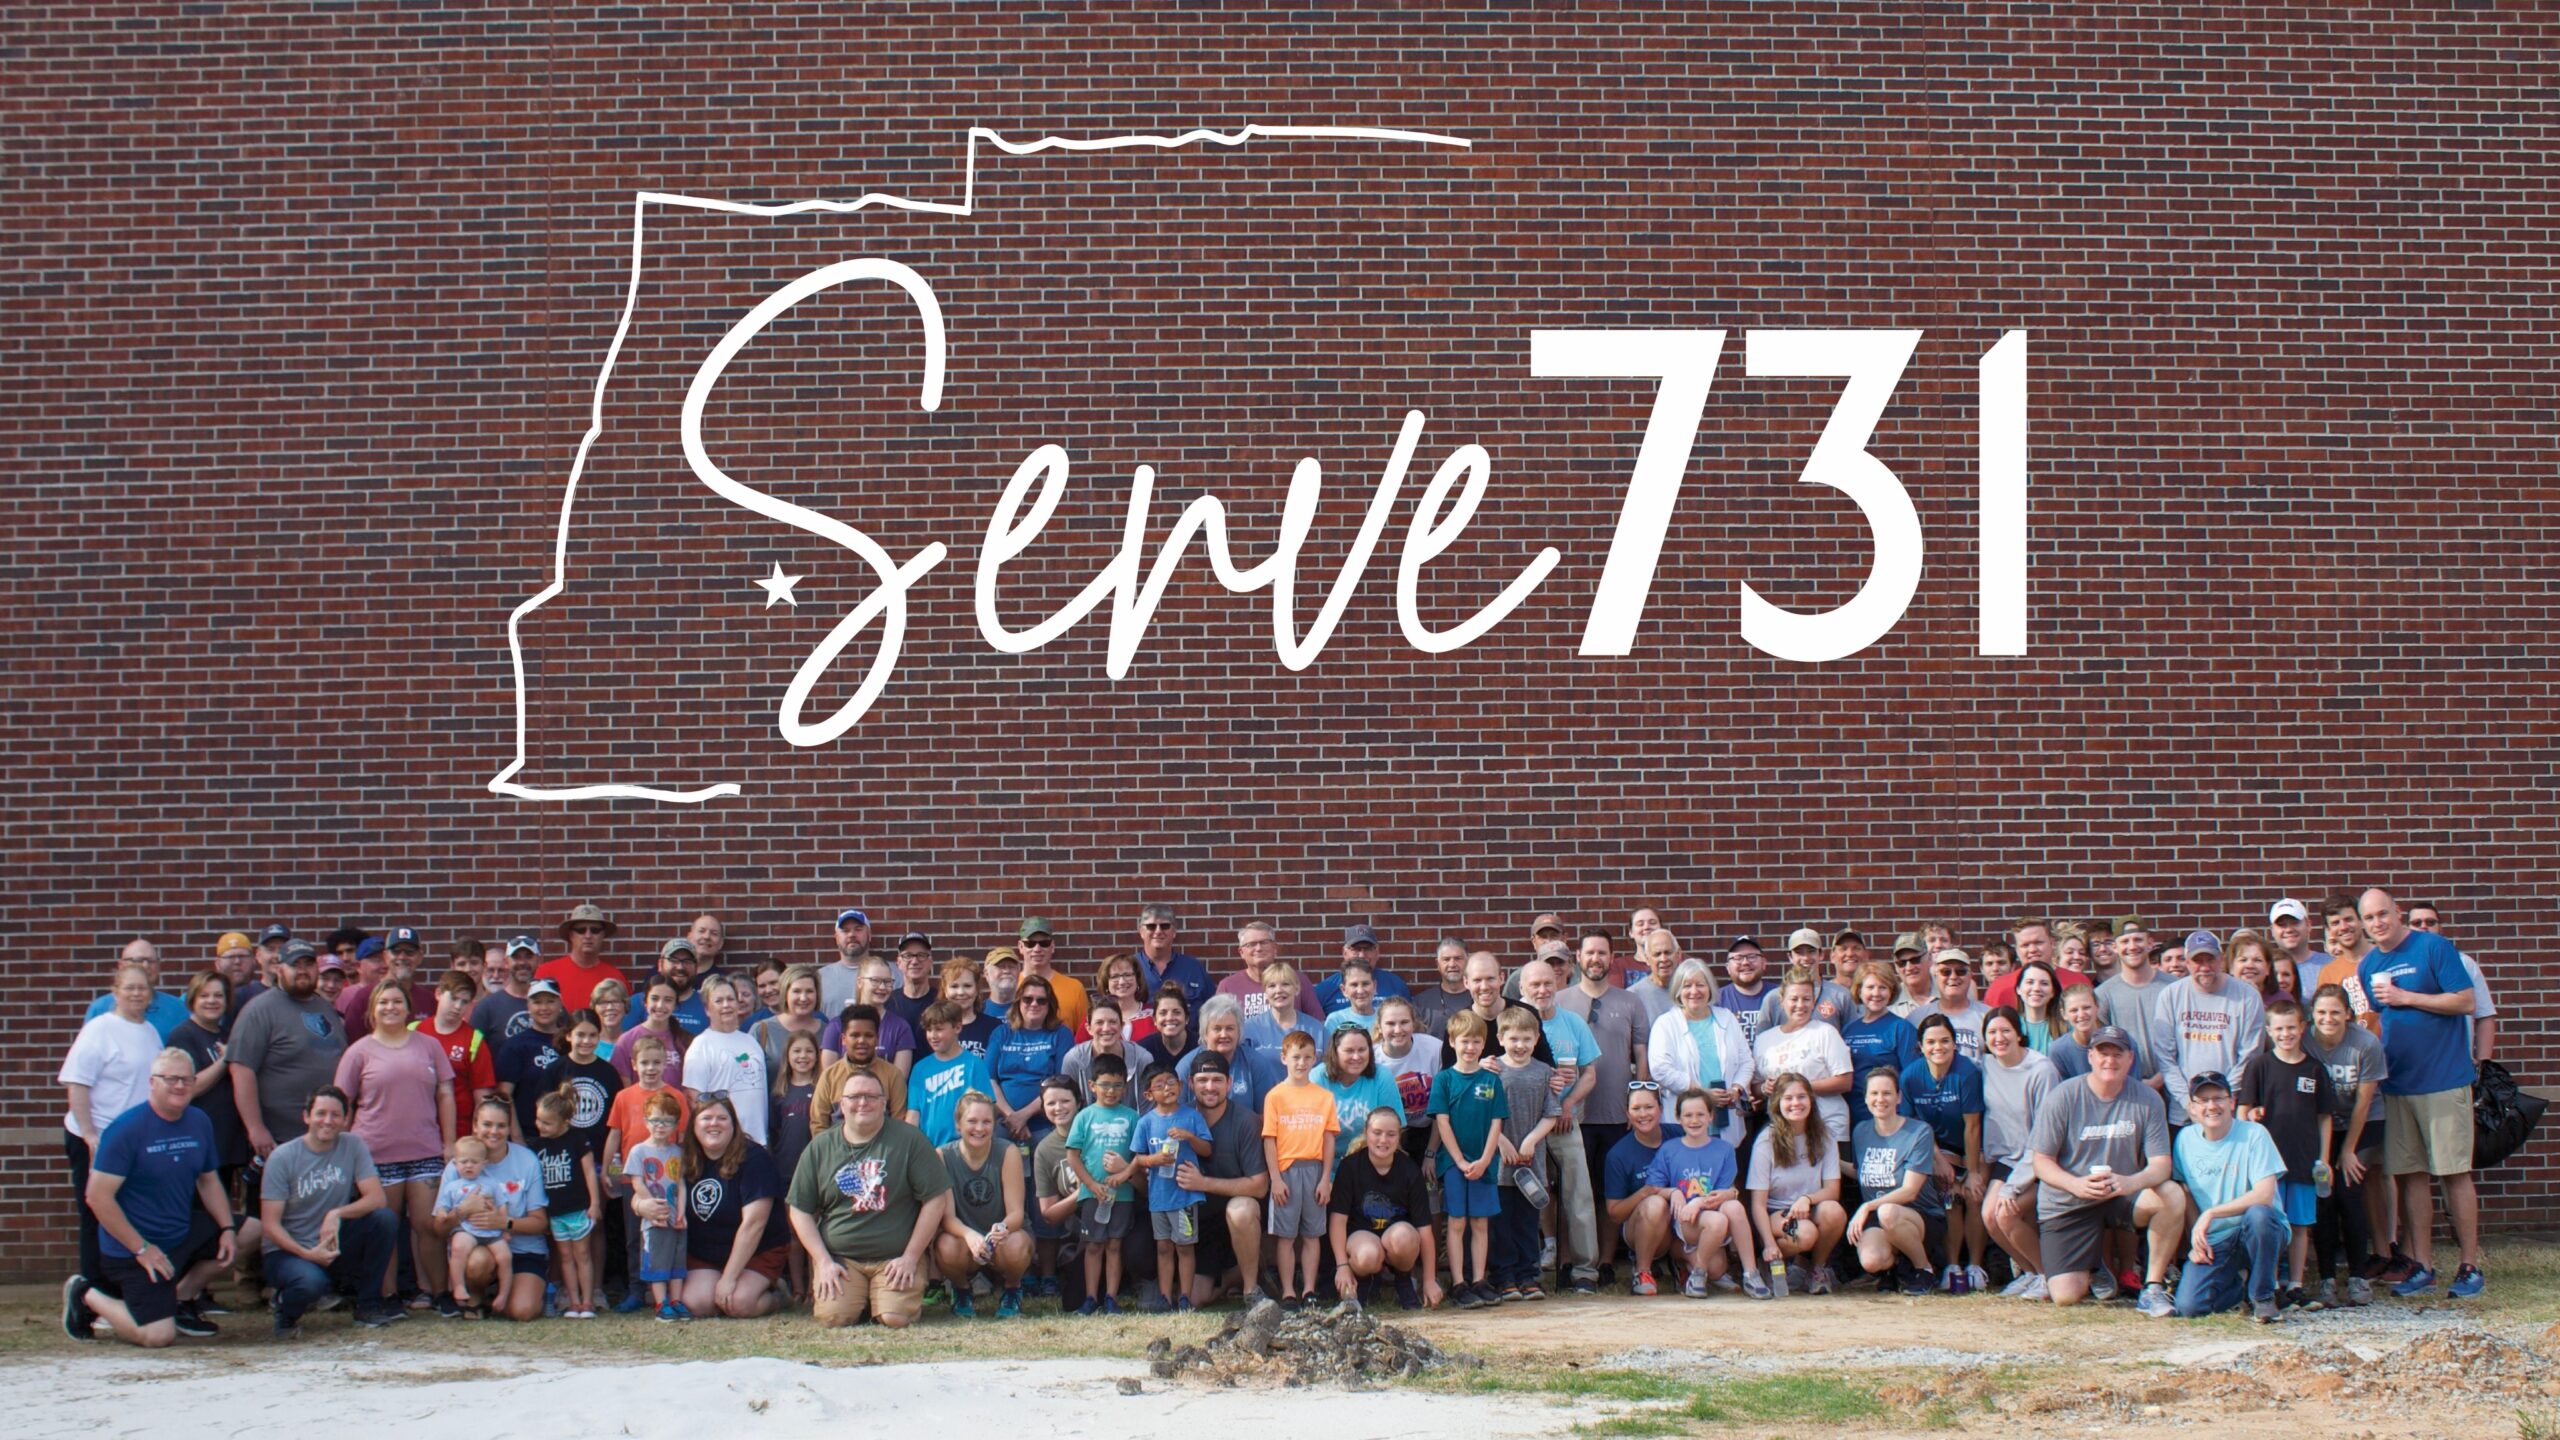 Serve731 Group of Volunteers